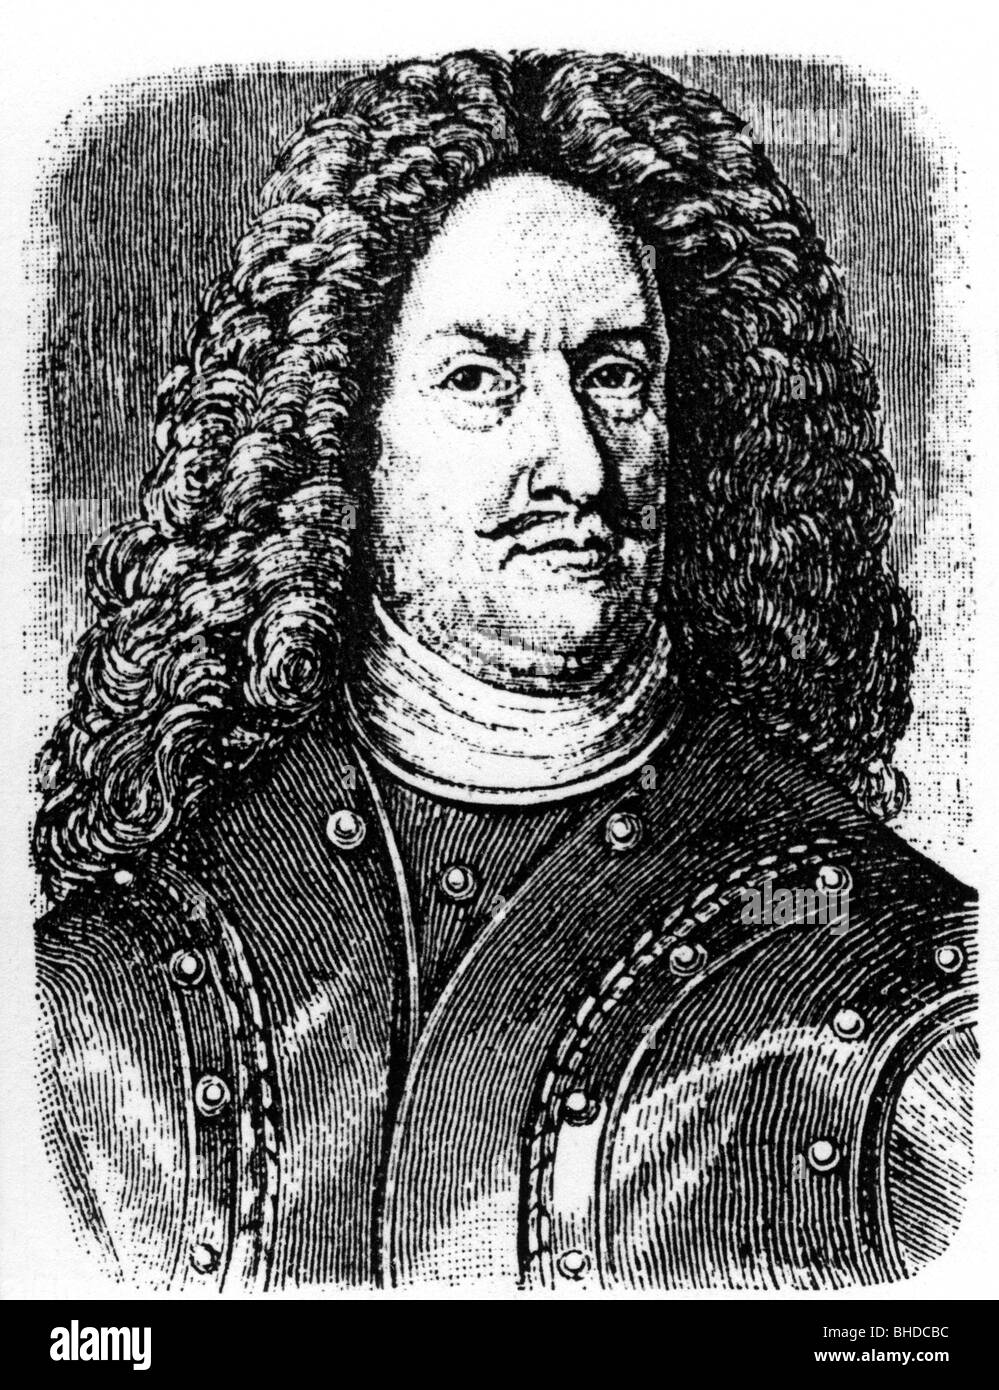 Dahlberg, Erik Graf, 10.10.1625 - 16.1.1703, maréchal de campagne suédois, ingénieur militaire, portrait, après gravure contemporaine, Banque D'Images